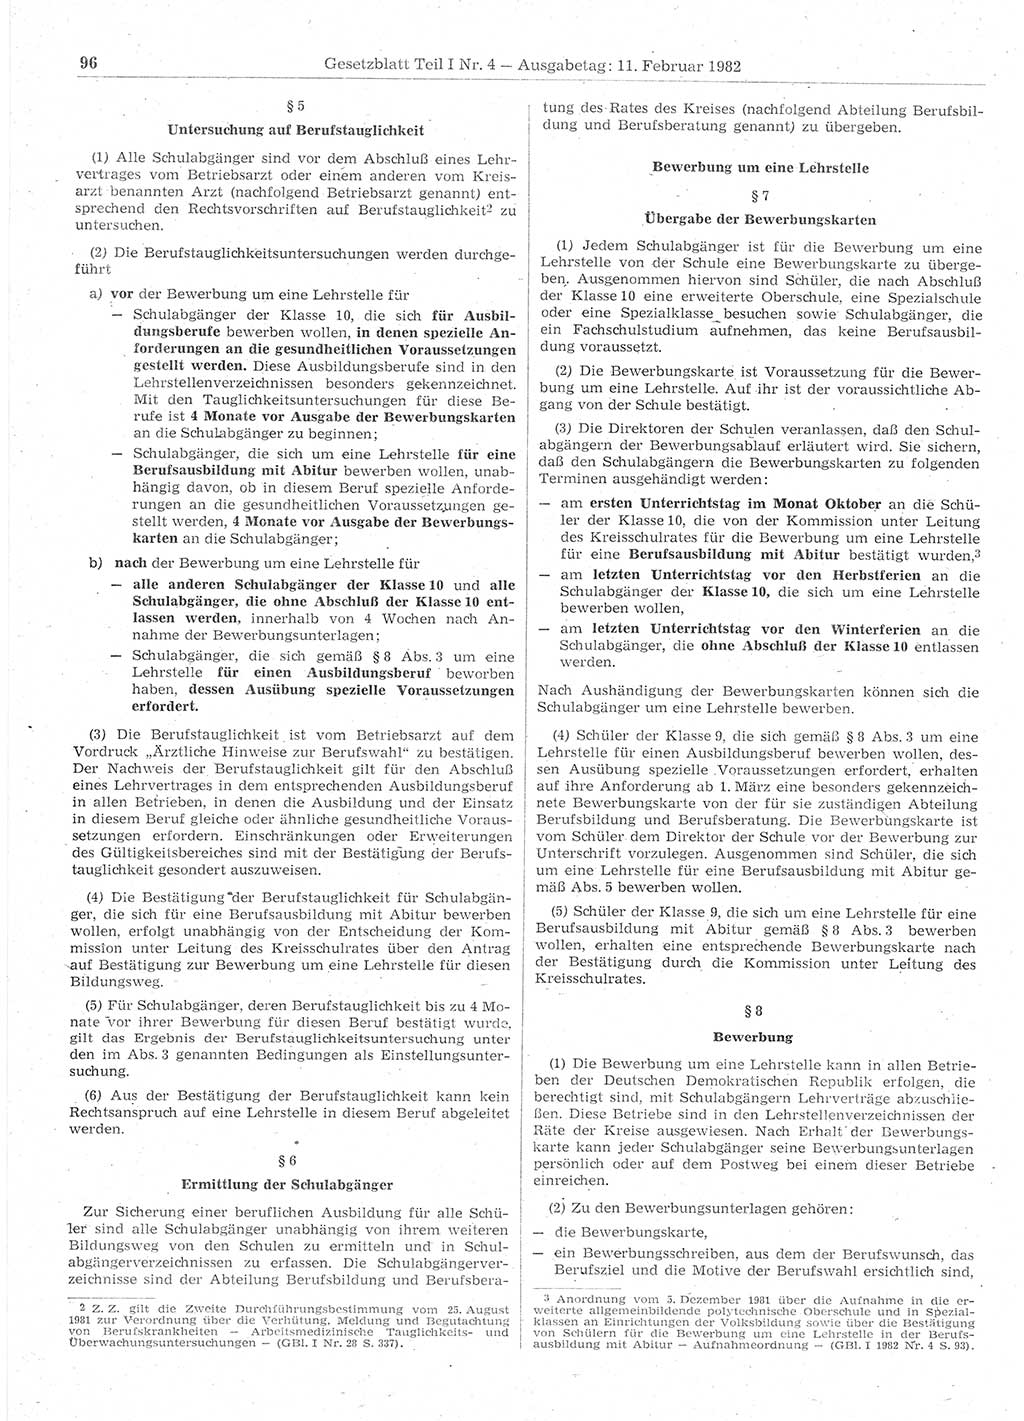 Gesetzblatt (GBl.) der Deutschen Demokratischen Republik (DDR) Teil Ⅰ 1982, Seite 96 (GBl. DDR Ⅰ 1982, S. 96)